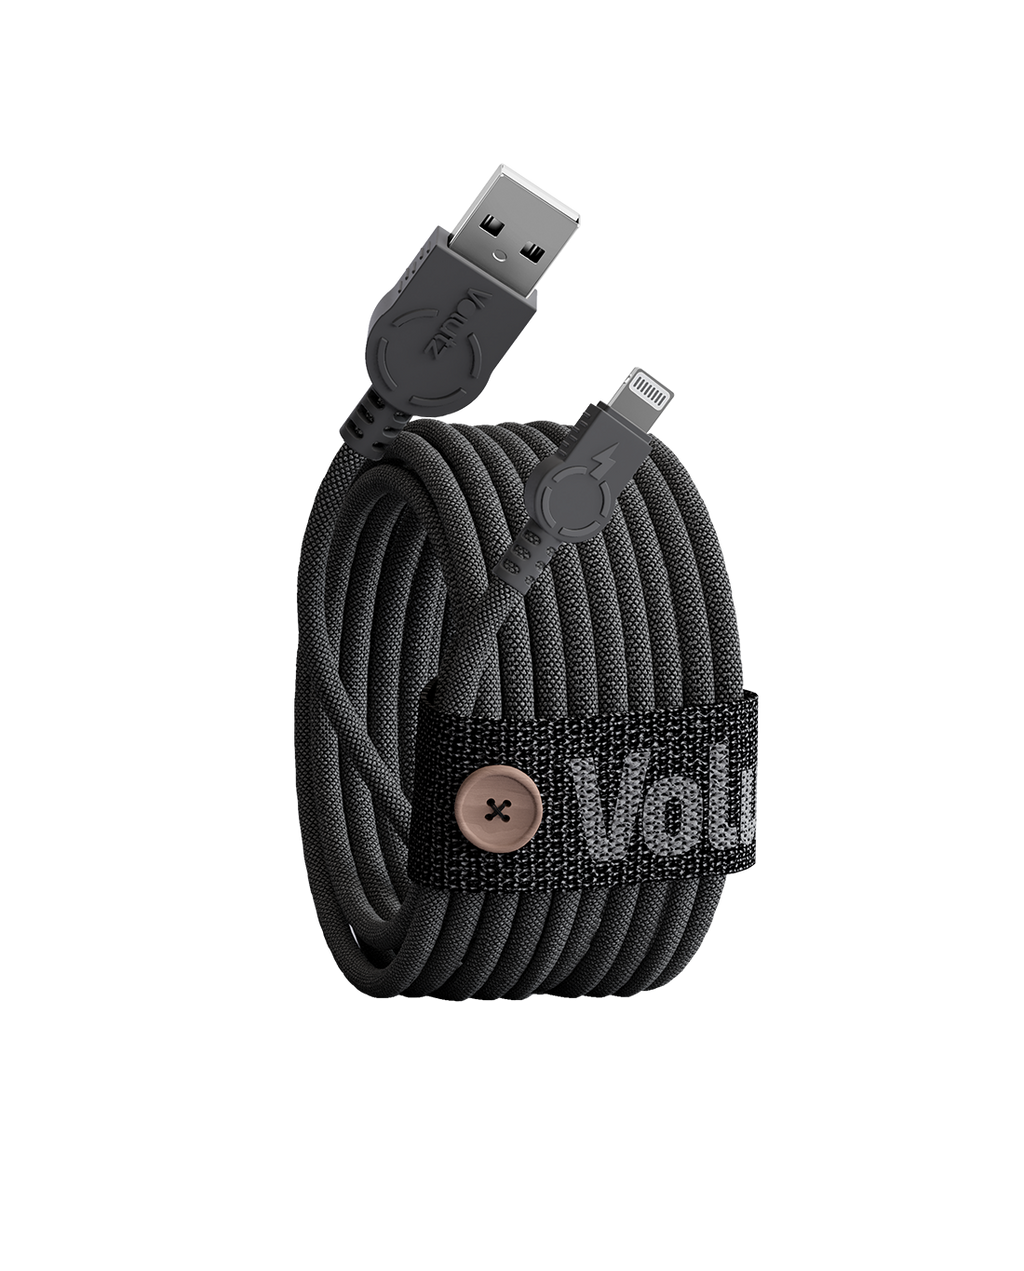 Horn Standard Færøerne Volutz Cableogy II Lightning to USB Cable, 3m, Jet Black